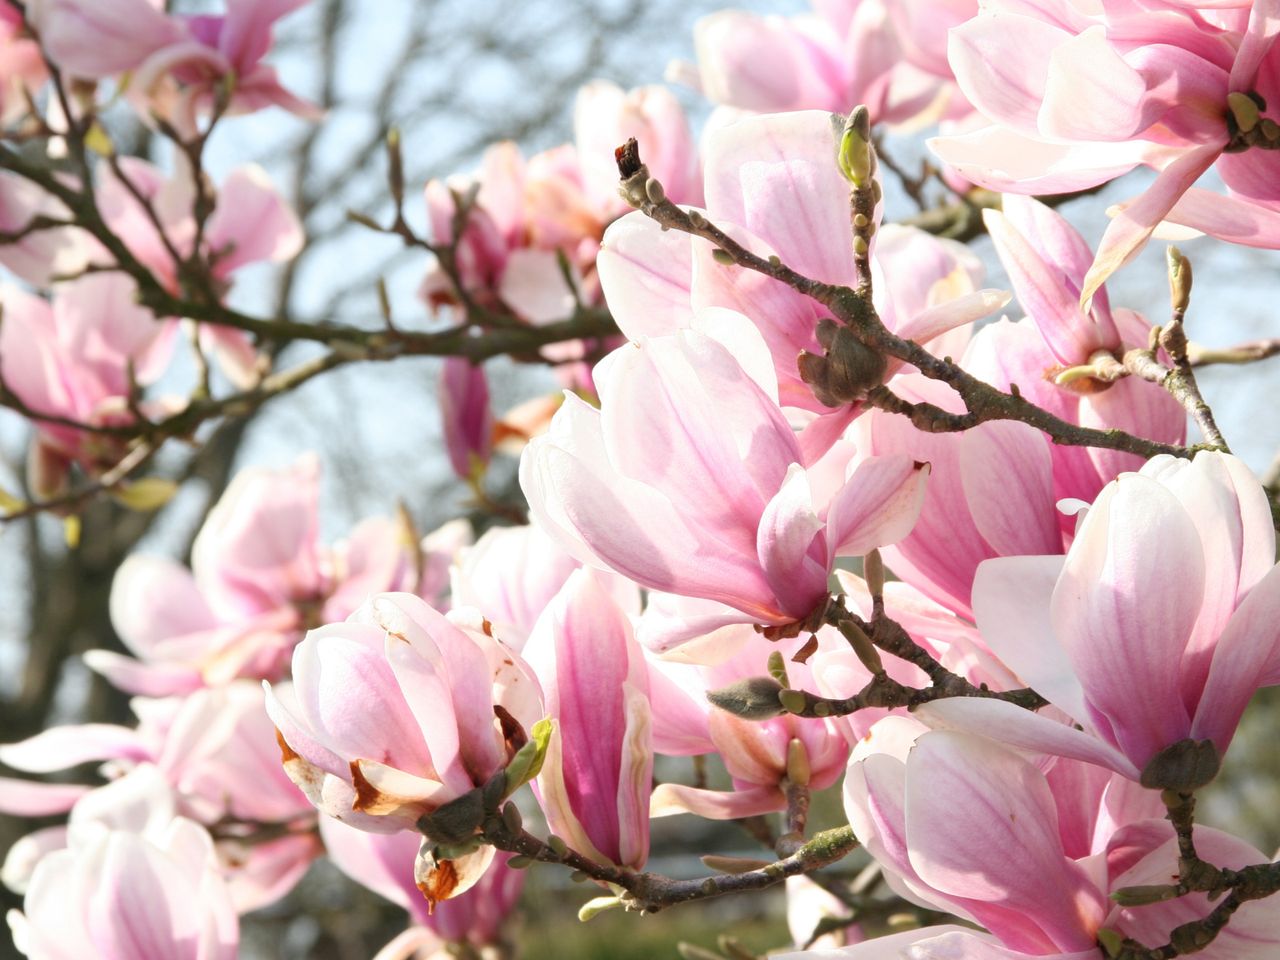 Przycinanie magnolii może się źle skończyć. Wielu popełnia ten błąd